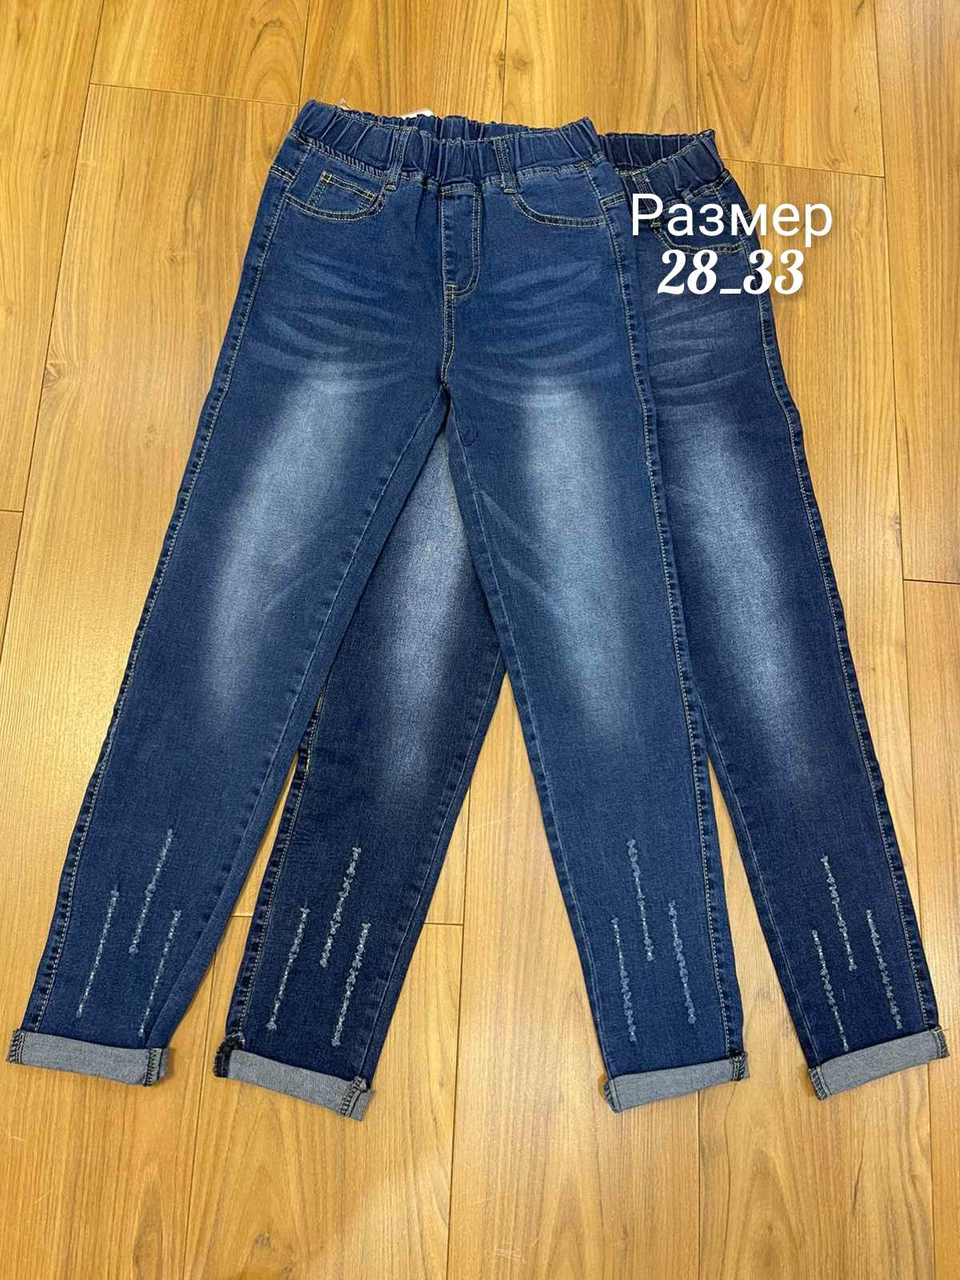 Жіночі стрейчові джинси НАПIВБАТАЛ (р-ри: 28-33) BN283 (в уп. один колiр) весна-осінь.